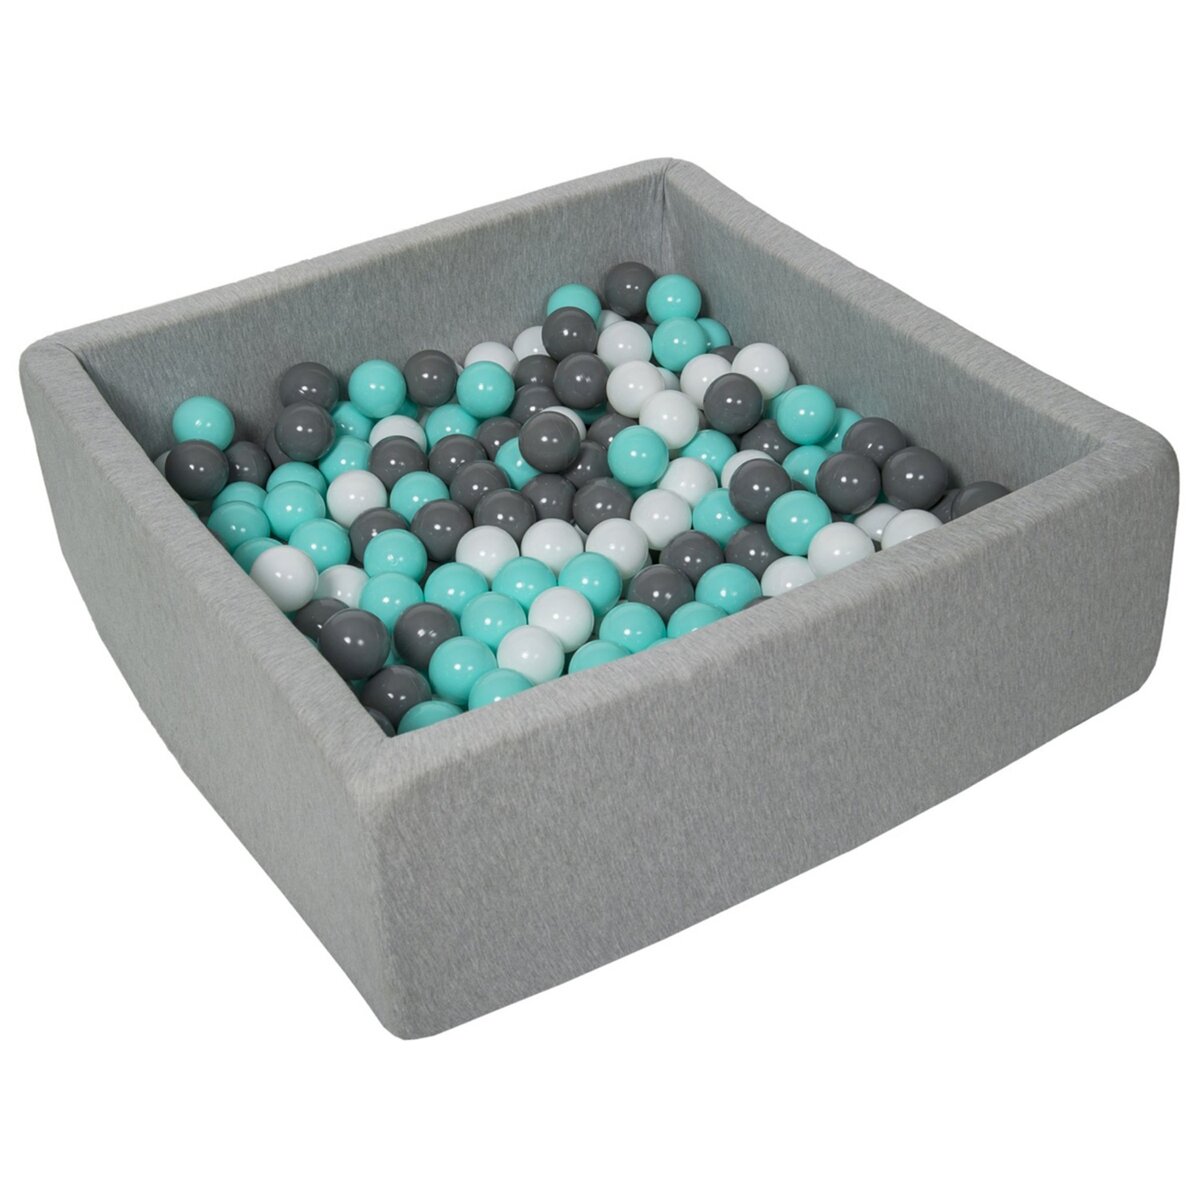 Piscine à balles pour enfant, 90x90 cm, Aire de jeu + 200 balles  blanc,gris,turquoise pas cher 